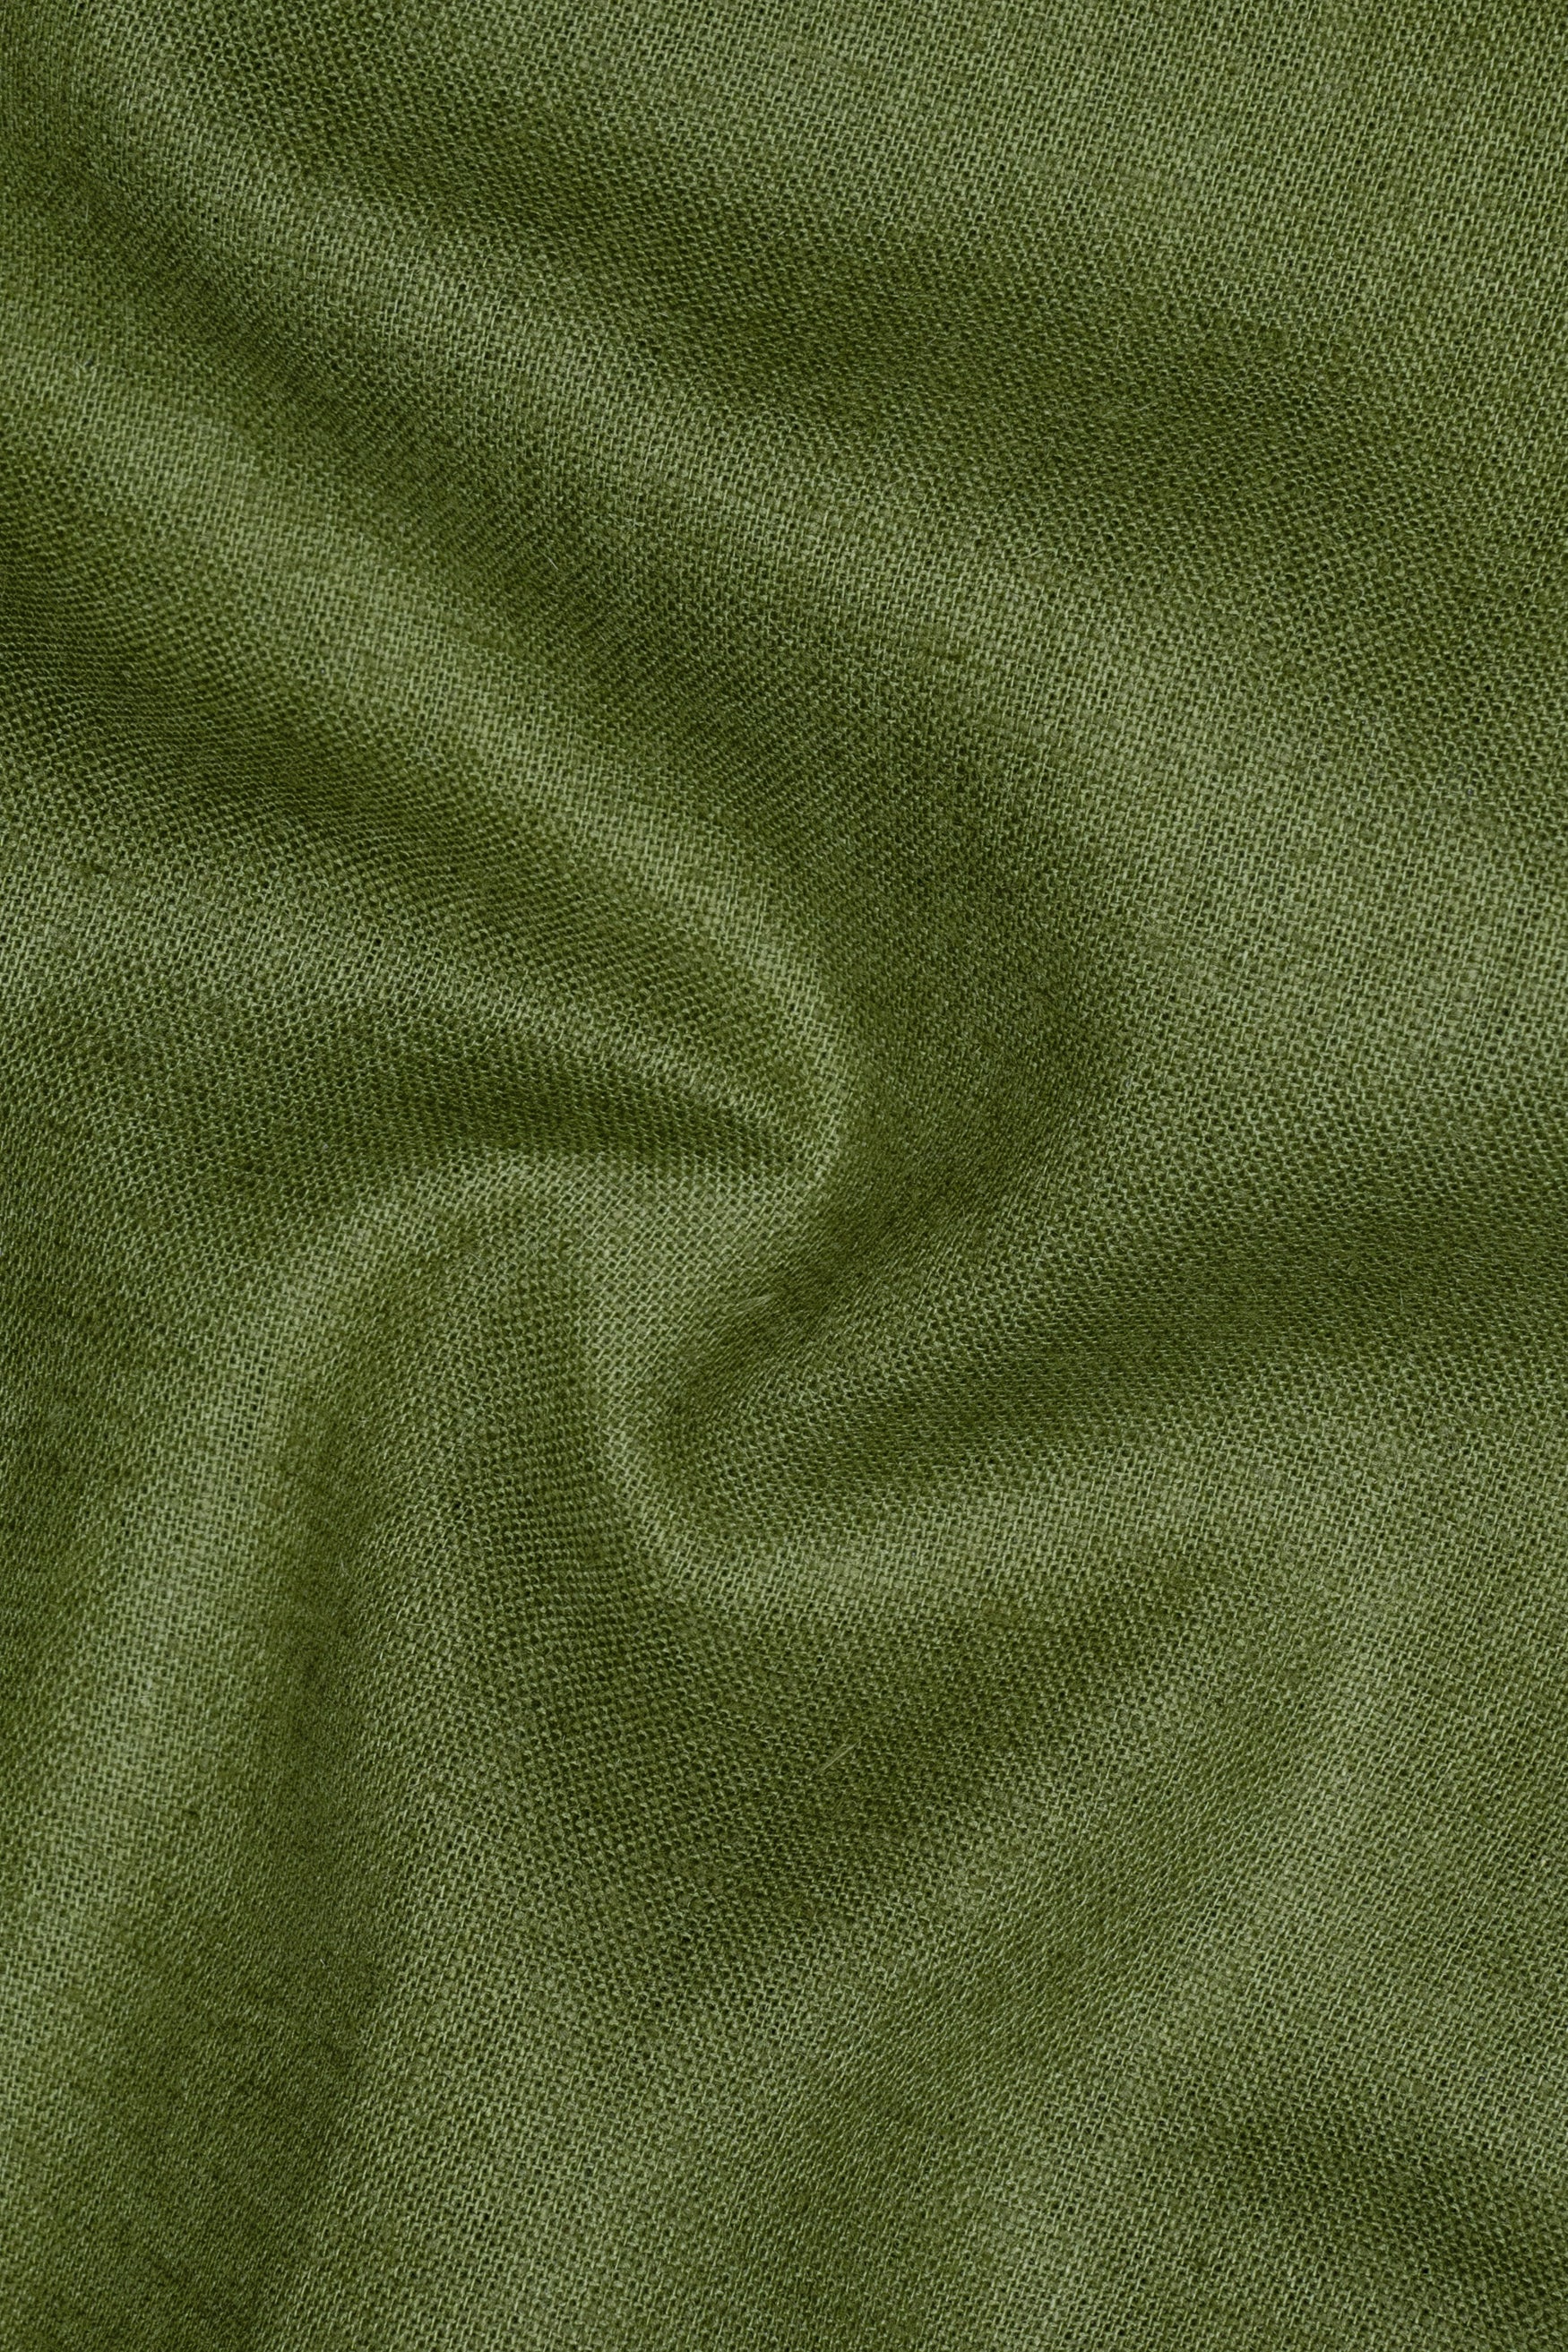 Hemlock Green Textured Luxurious Linen Shirt